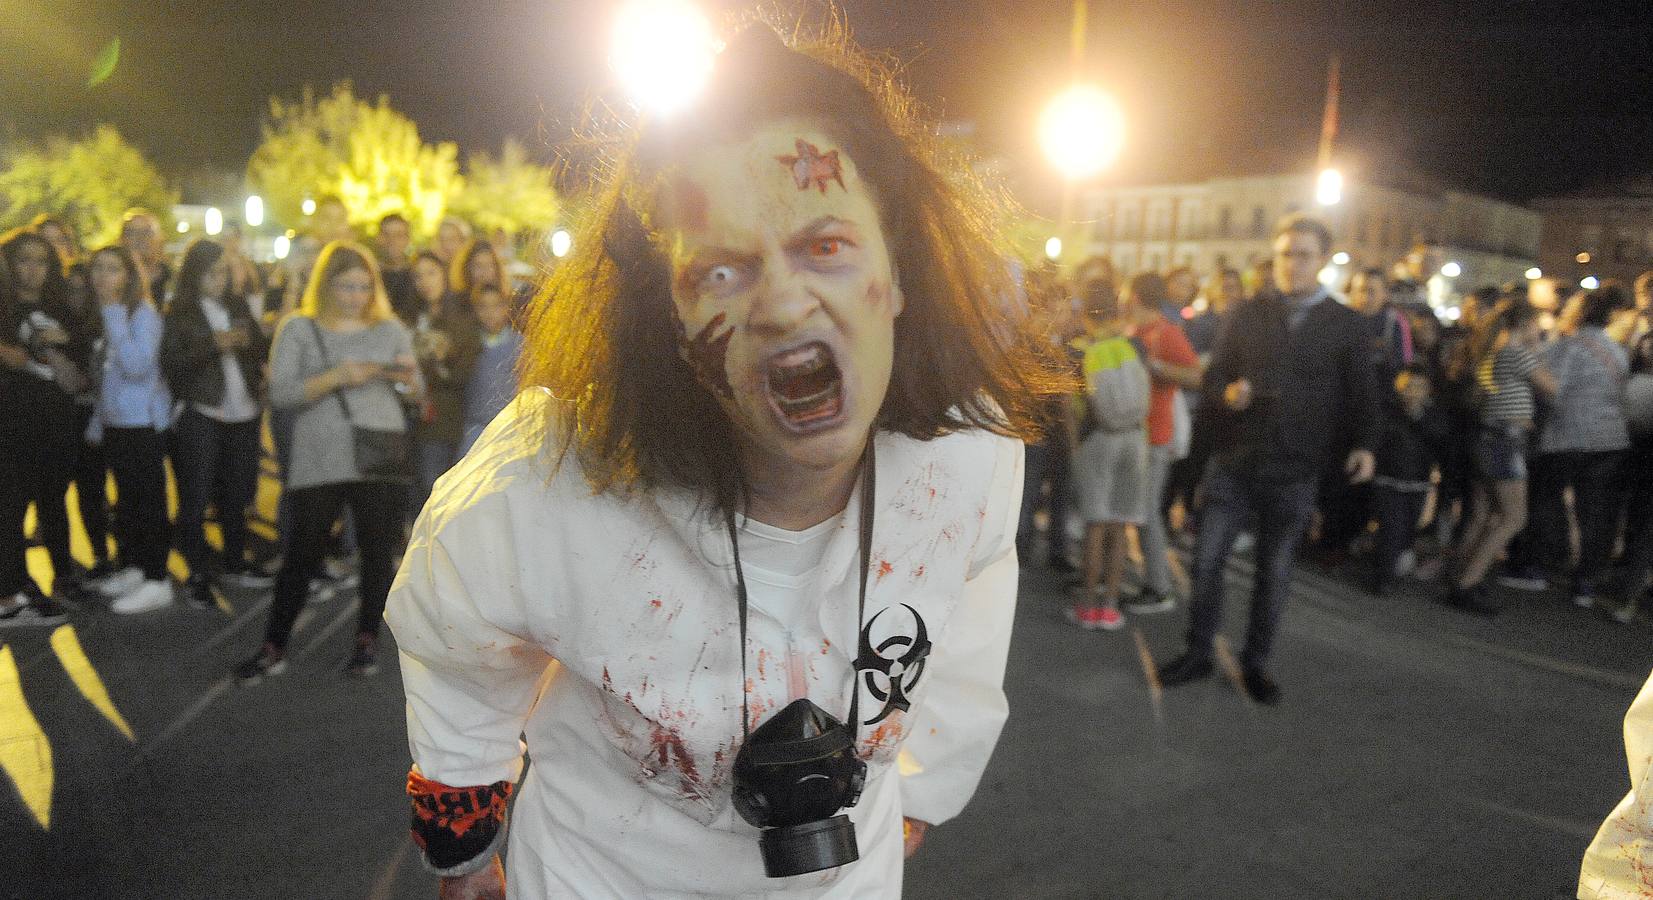 II Survival zombies de Medina del Campo